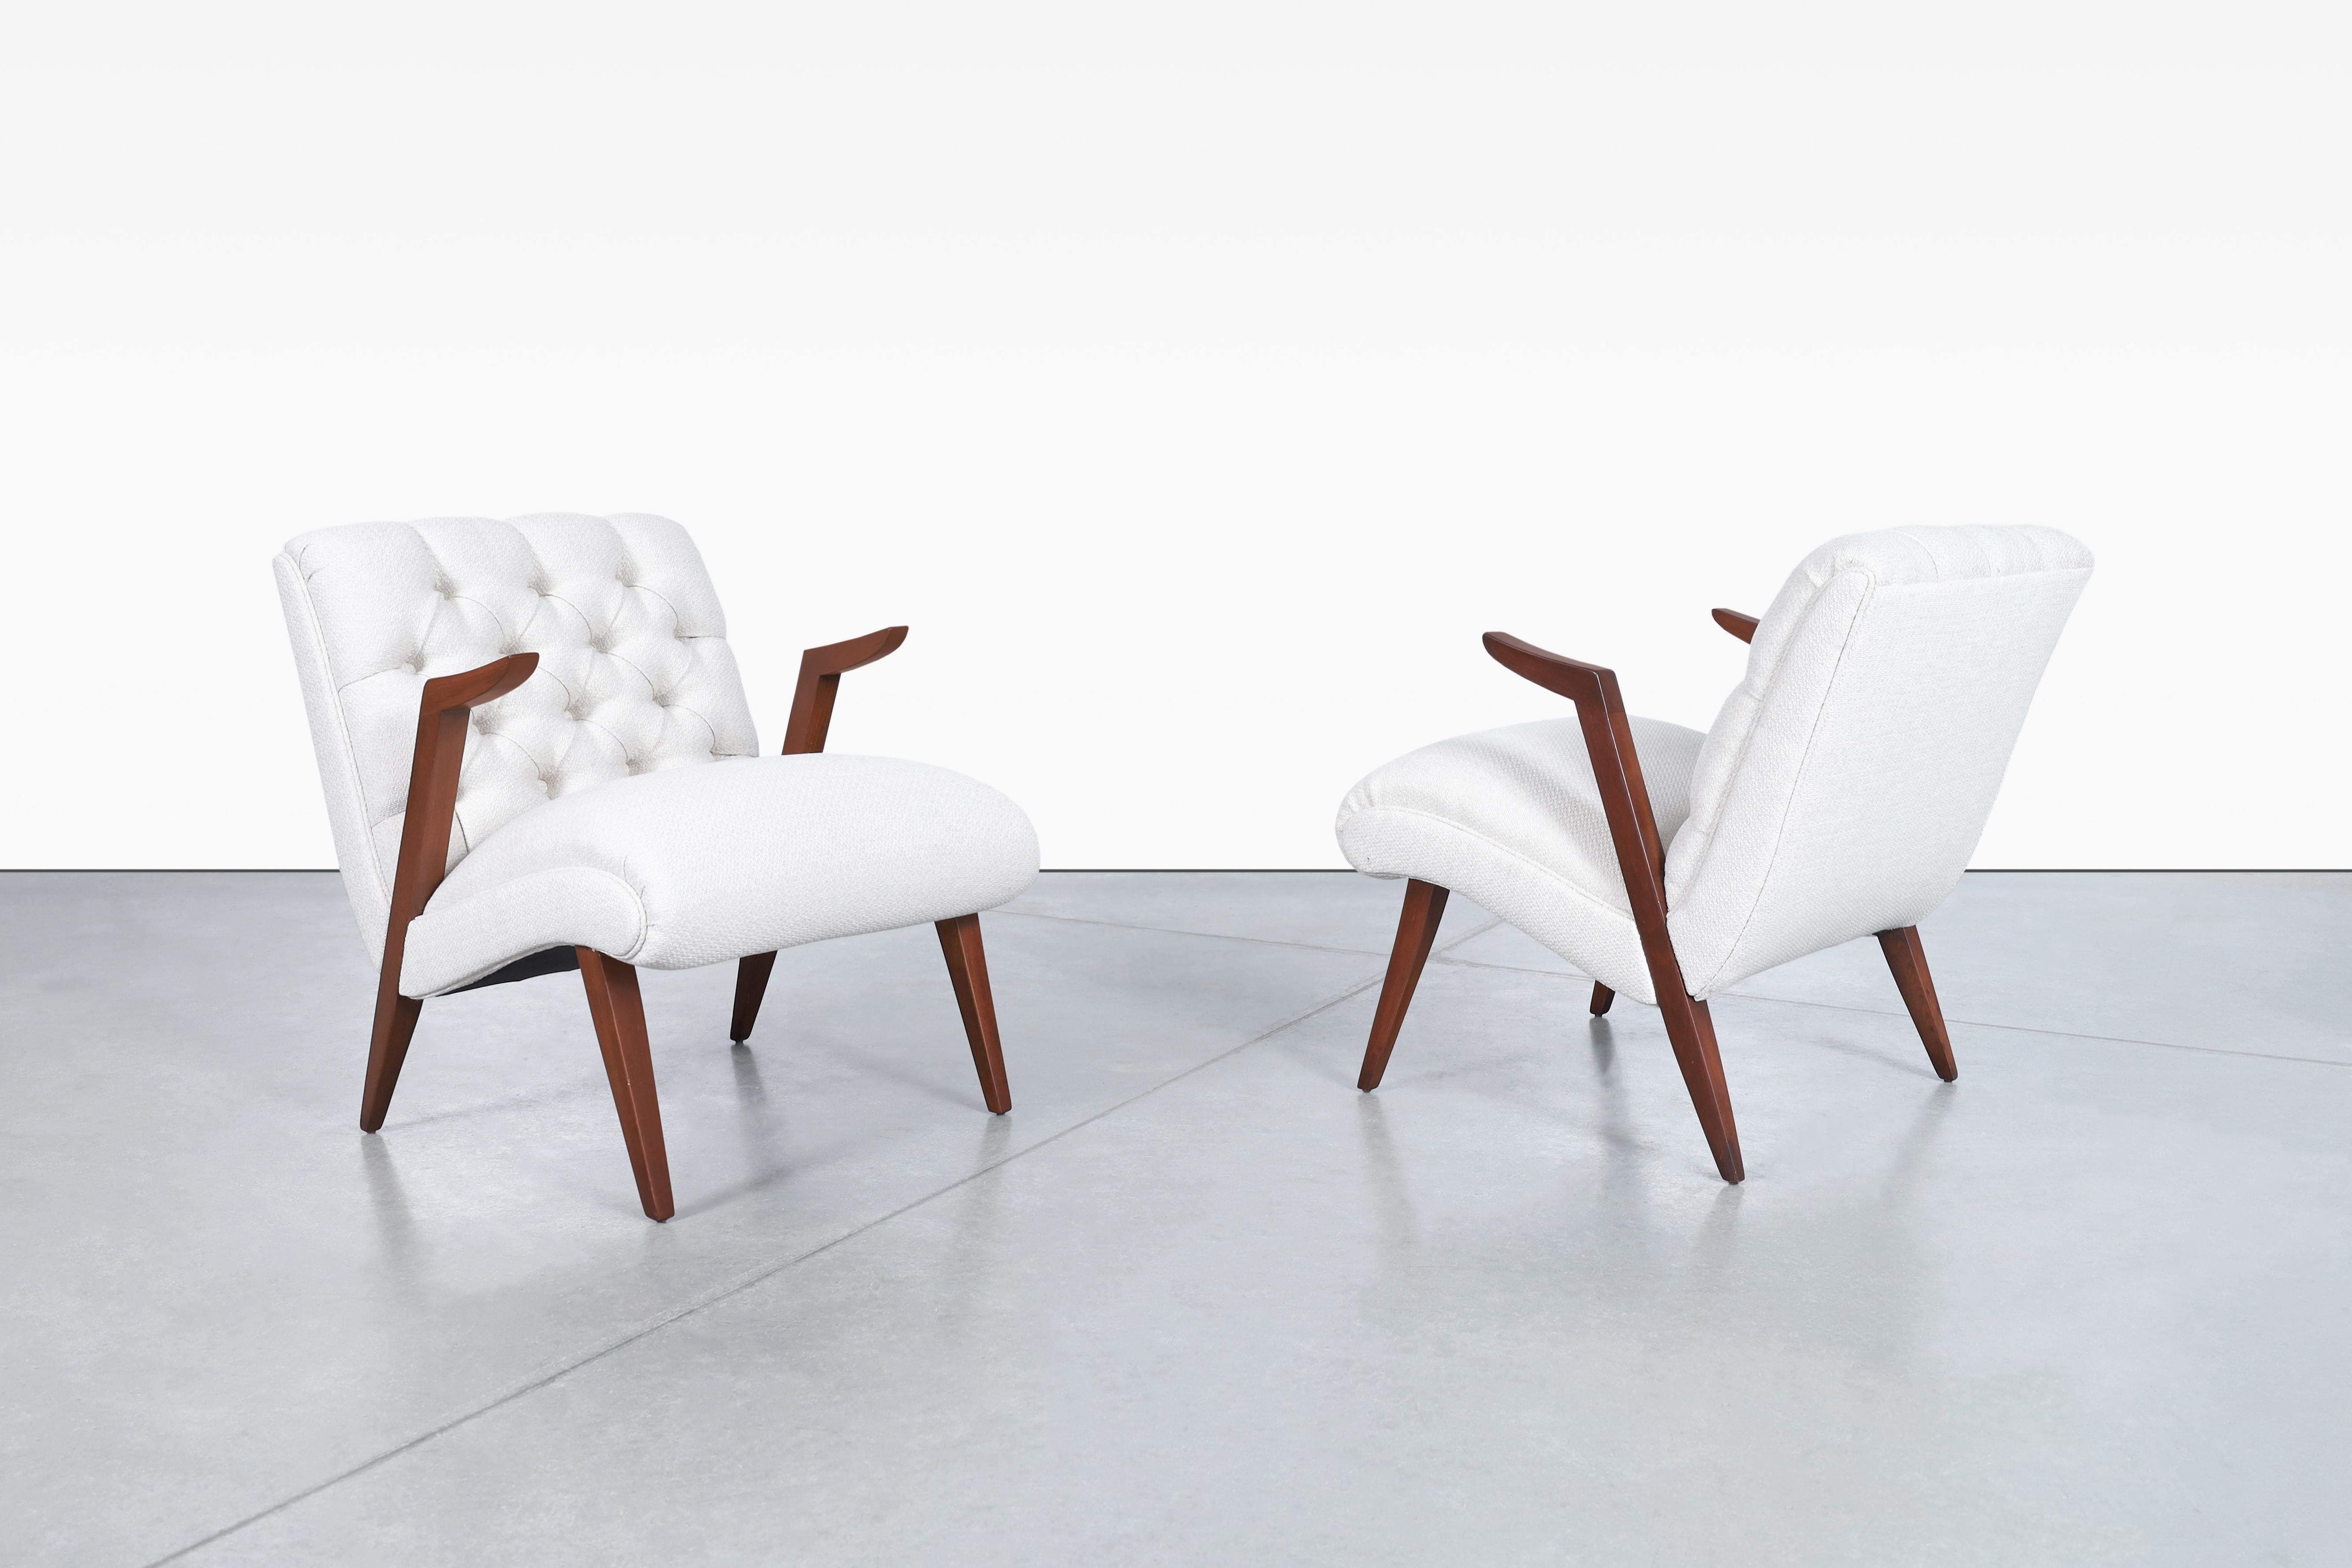 Schöne Vintage Nussbaum schwimmende Armlehnen Lounge-Stühle, in den Vereinigten Staaten entworfen, circa 1950's. Diese Stühle zeichnen sich durch ein exquisites architektonisches Design aus, bei dem der Komfort des Benutzers im Vordergrund steht und